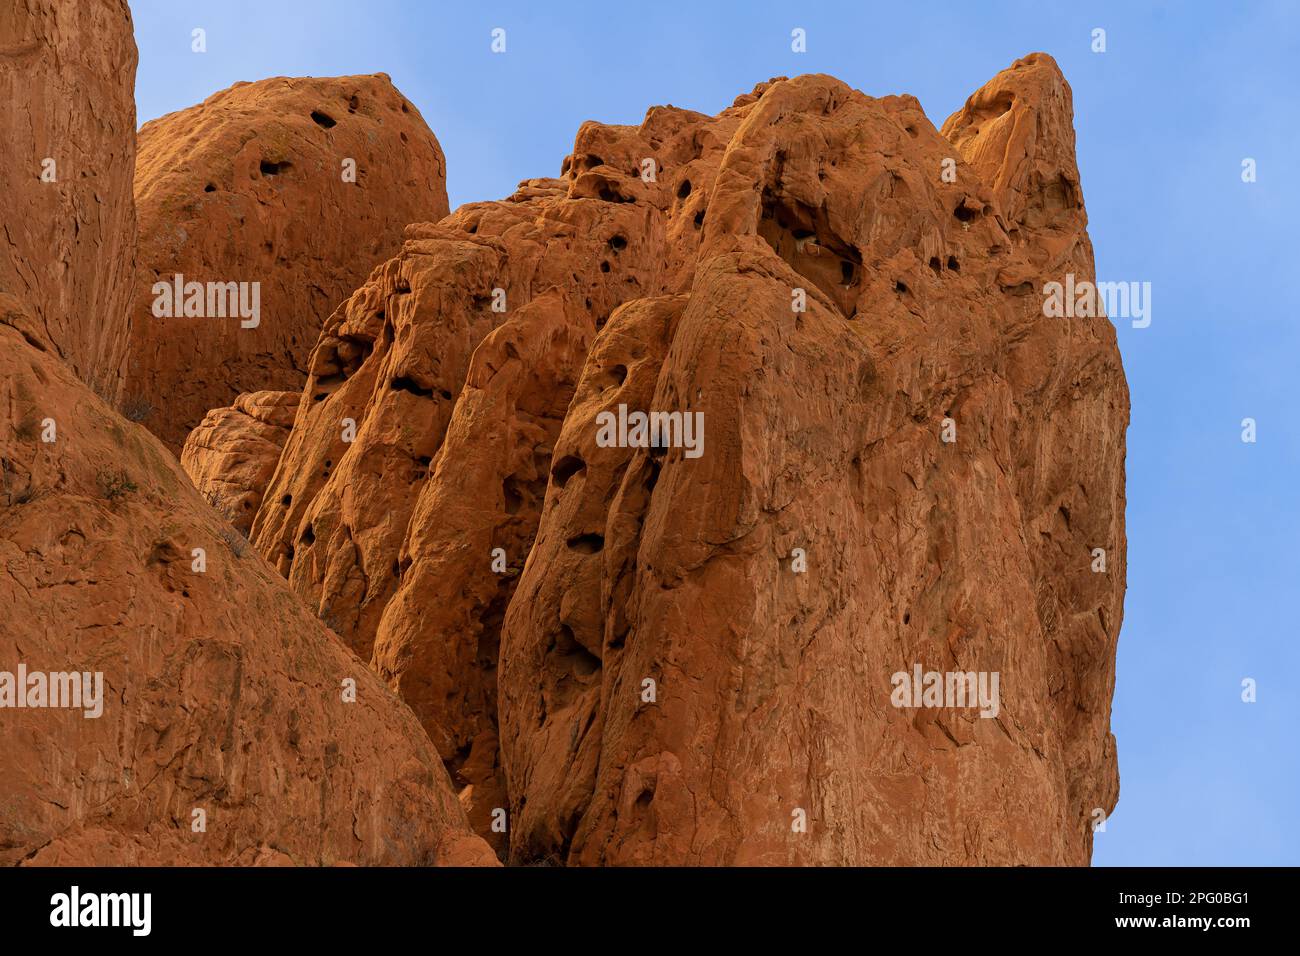 Rote Sandsteinfelsen mit interessanter Textur, Gruben, Stechspuren, Wind- und Wassererosion, Spalten, glatten Kanten, Bäume, die Flossen der Felsen wachsen Stockfoto